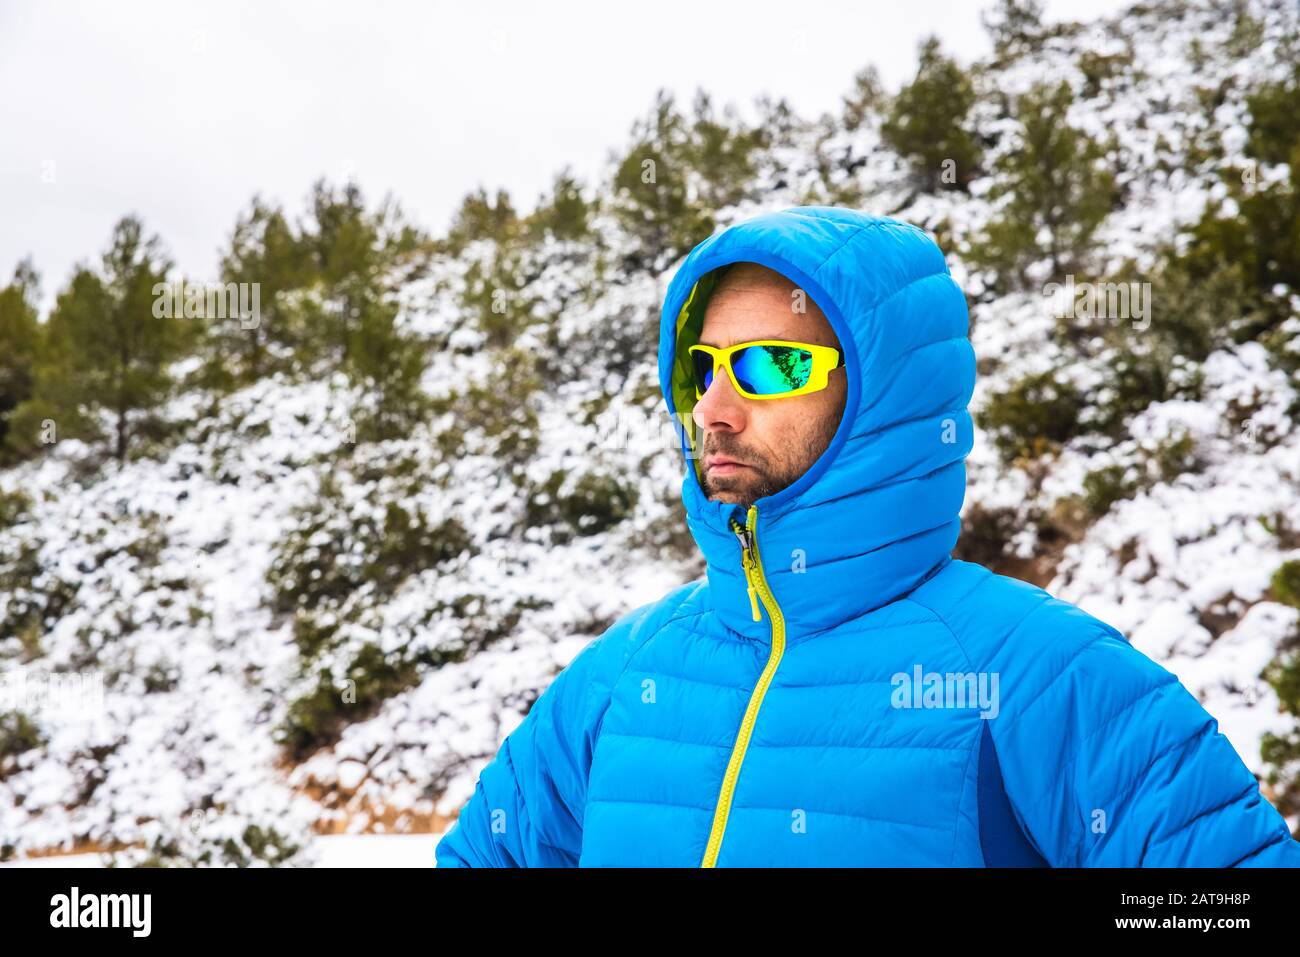 Hombre montañero con abrigo azul y gafas de sol caminando en un sendero nevado de montaña su tiempo libre Fotografía de - Alamy